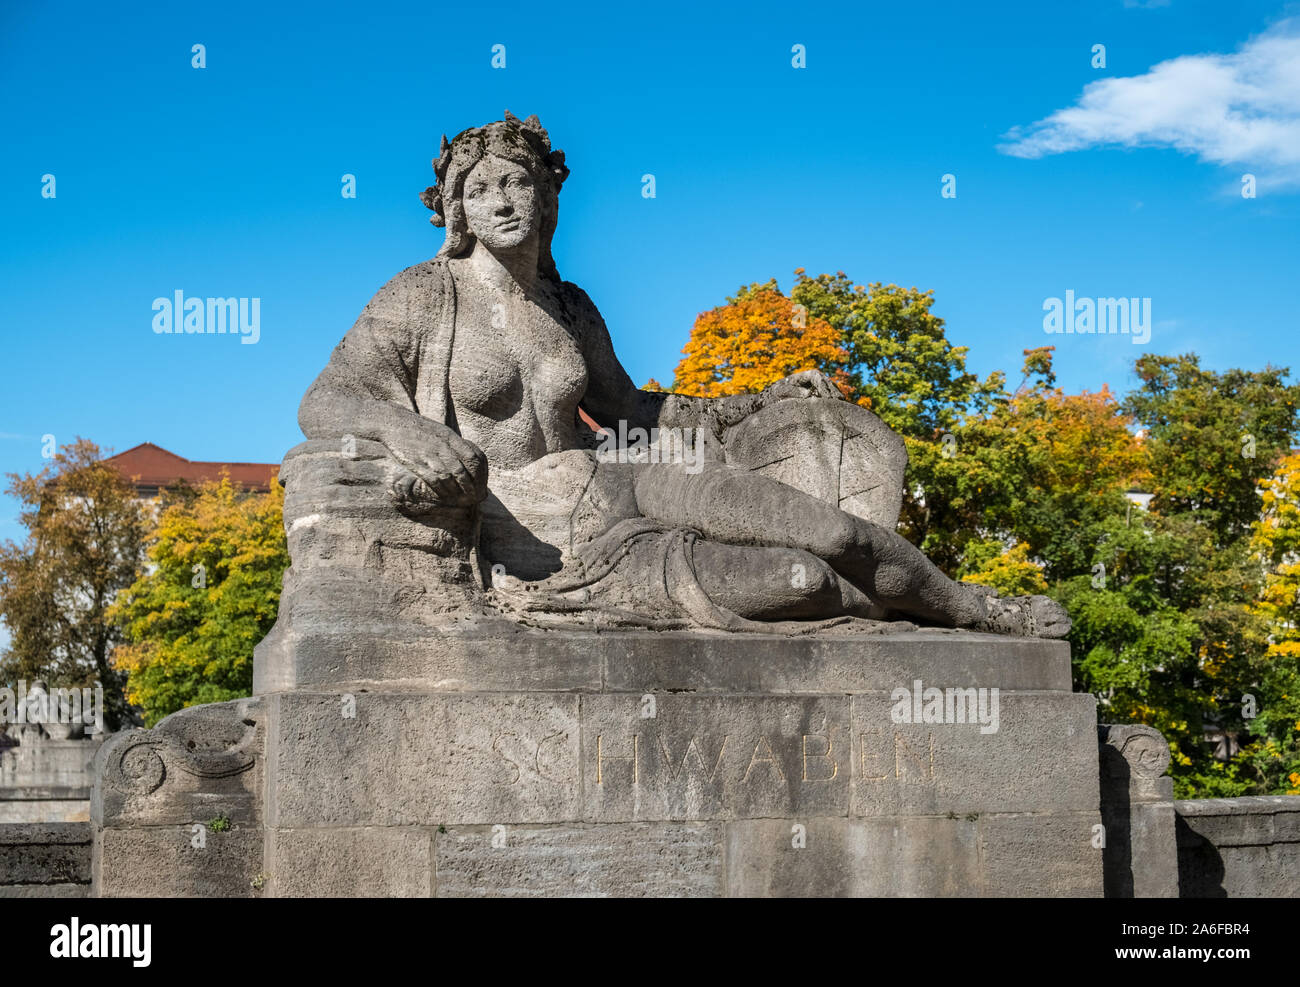 Schwaben statua di pietra scultura si trova sul Luitpold come ponte che attraversa il fiume Isar, Monaco di Baviera, Germania. Foto Stock